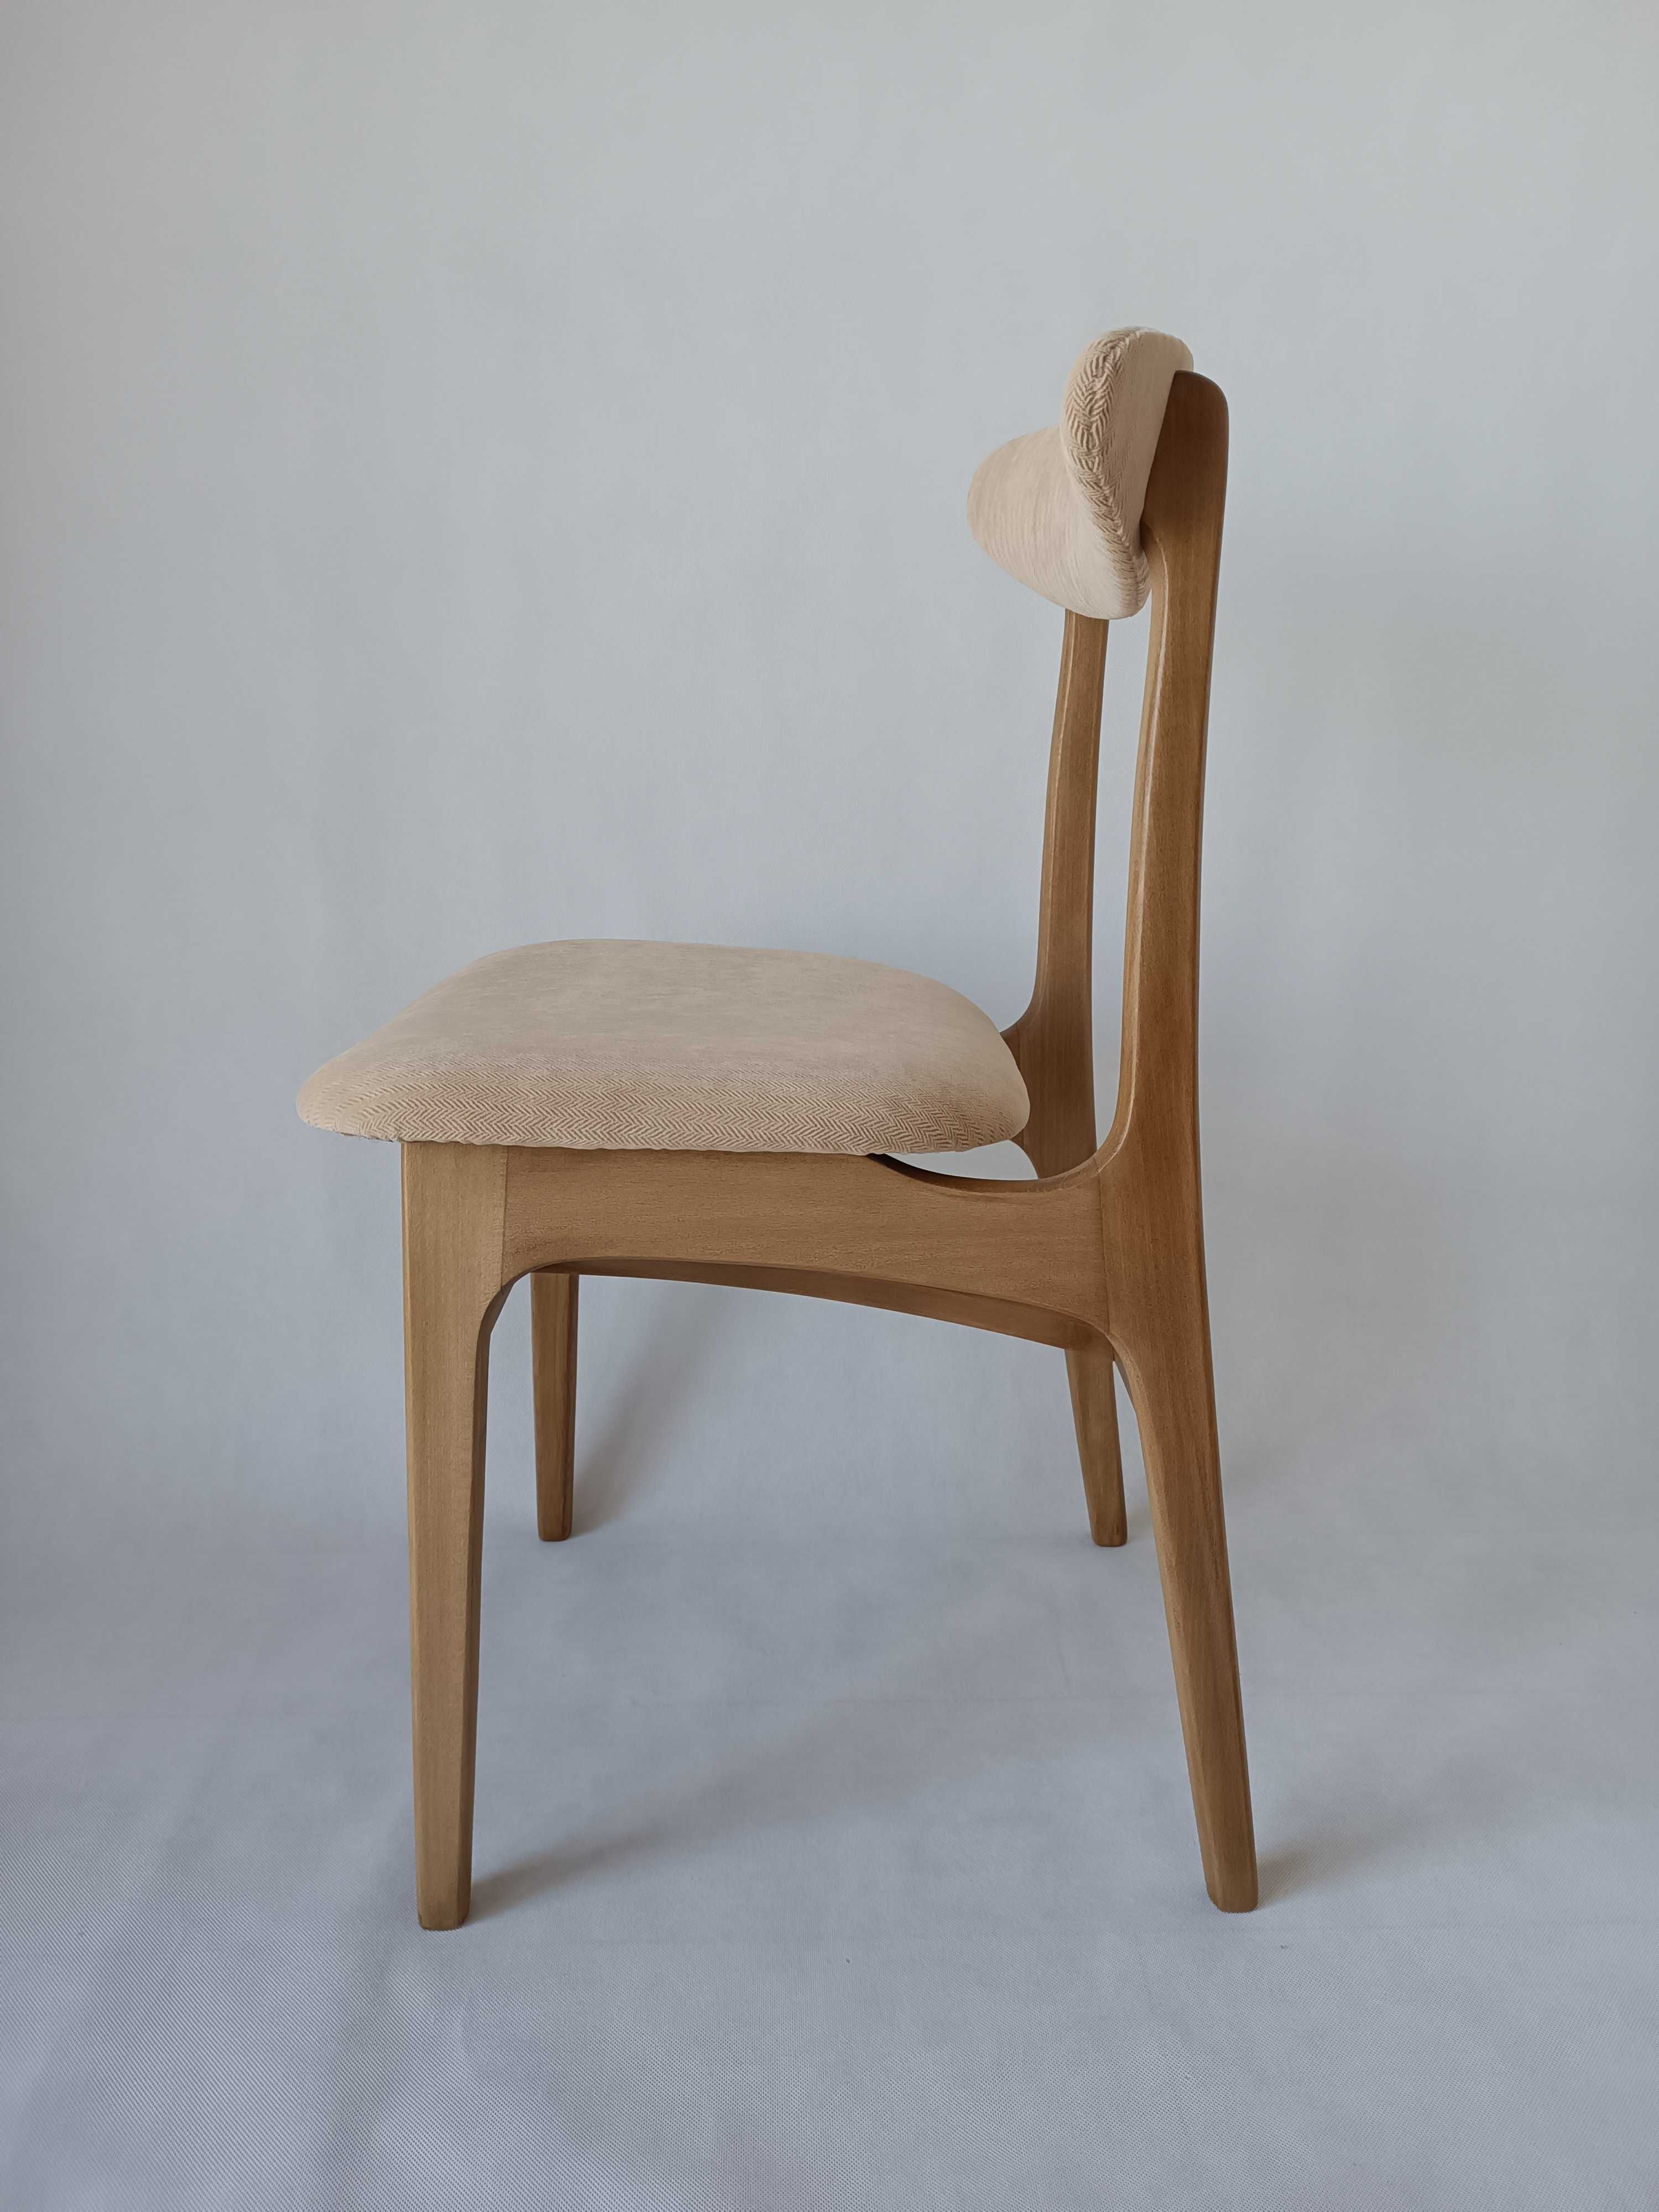 4 krzesła Hałas PRL typ 200-190, projekt R.T. Hałas, lata 60.